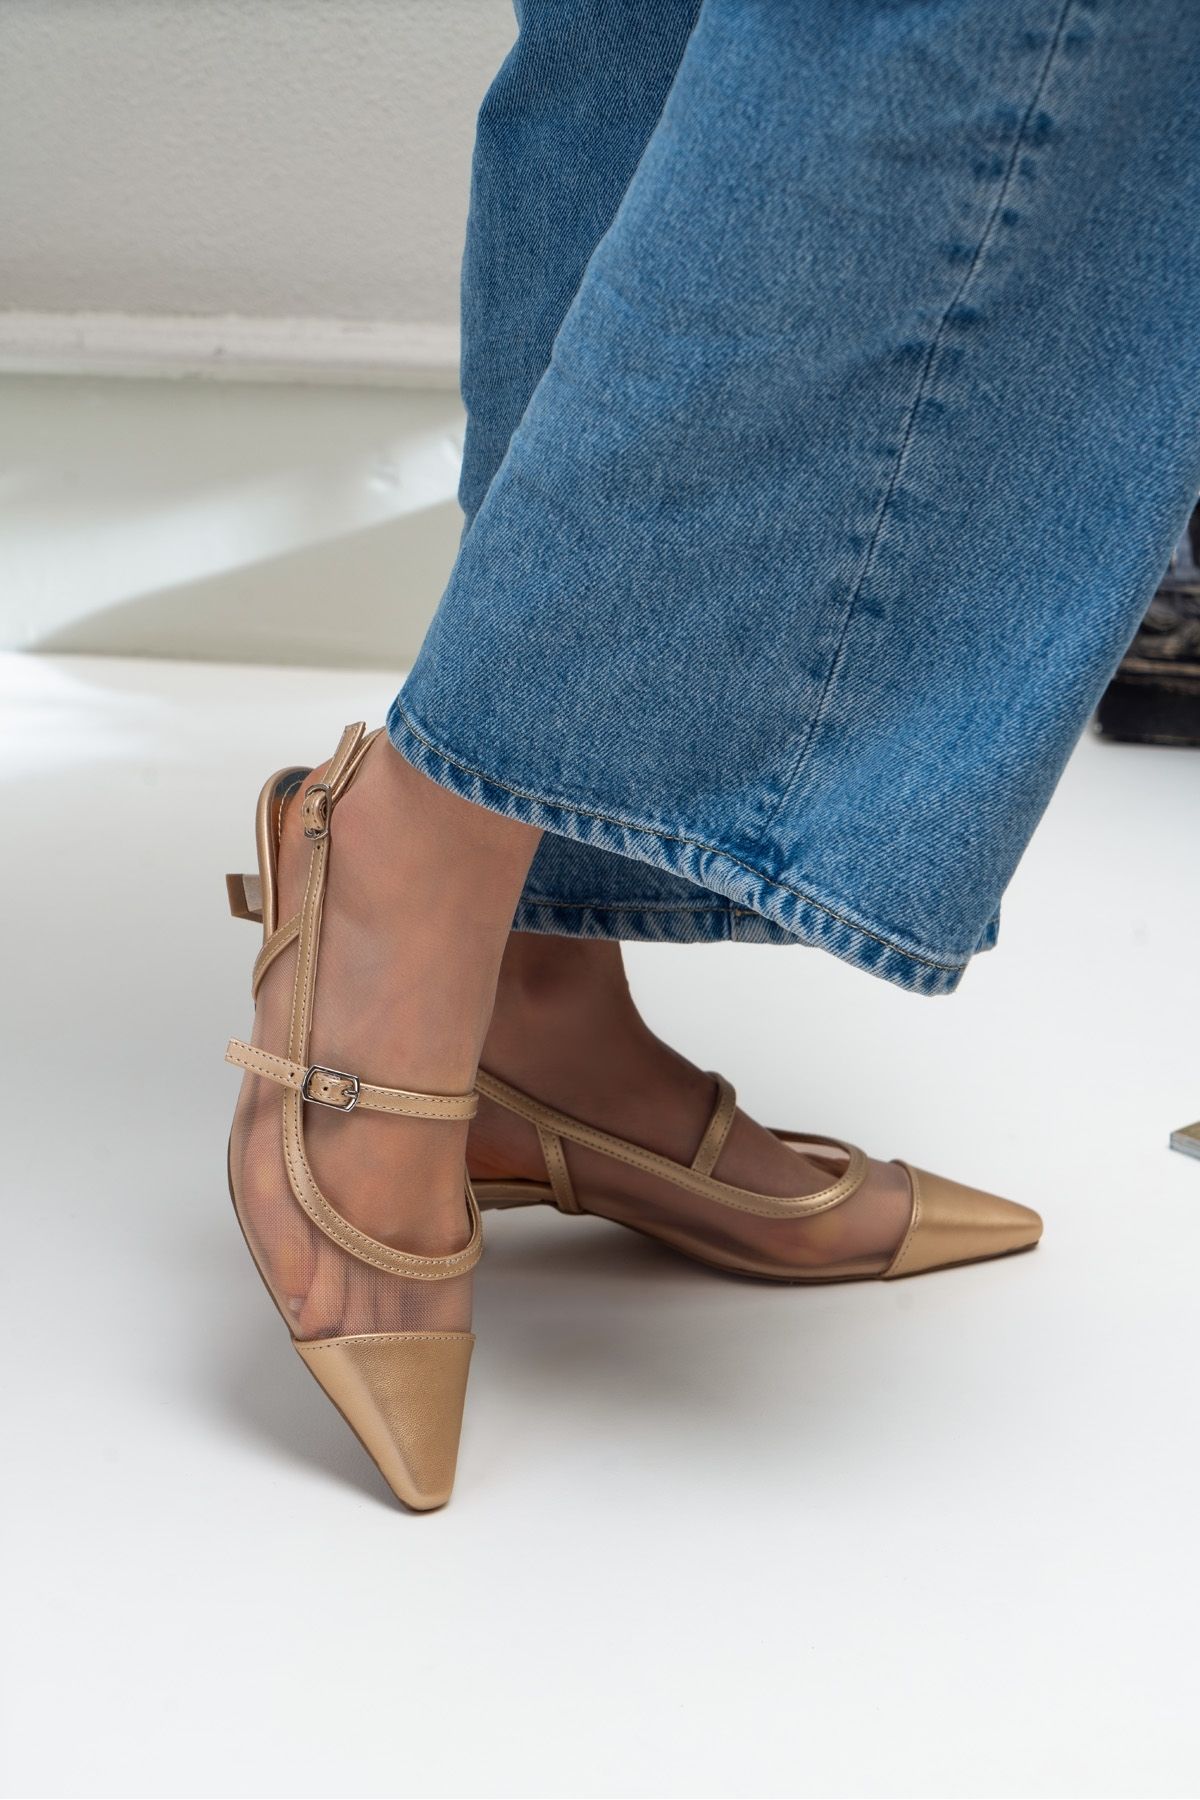 NİŞANTAŞI SHOES Tamsen Altın Metalik Kemer Detay Bilek Bağlı Kadın Topuklu Ayakkabı